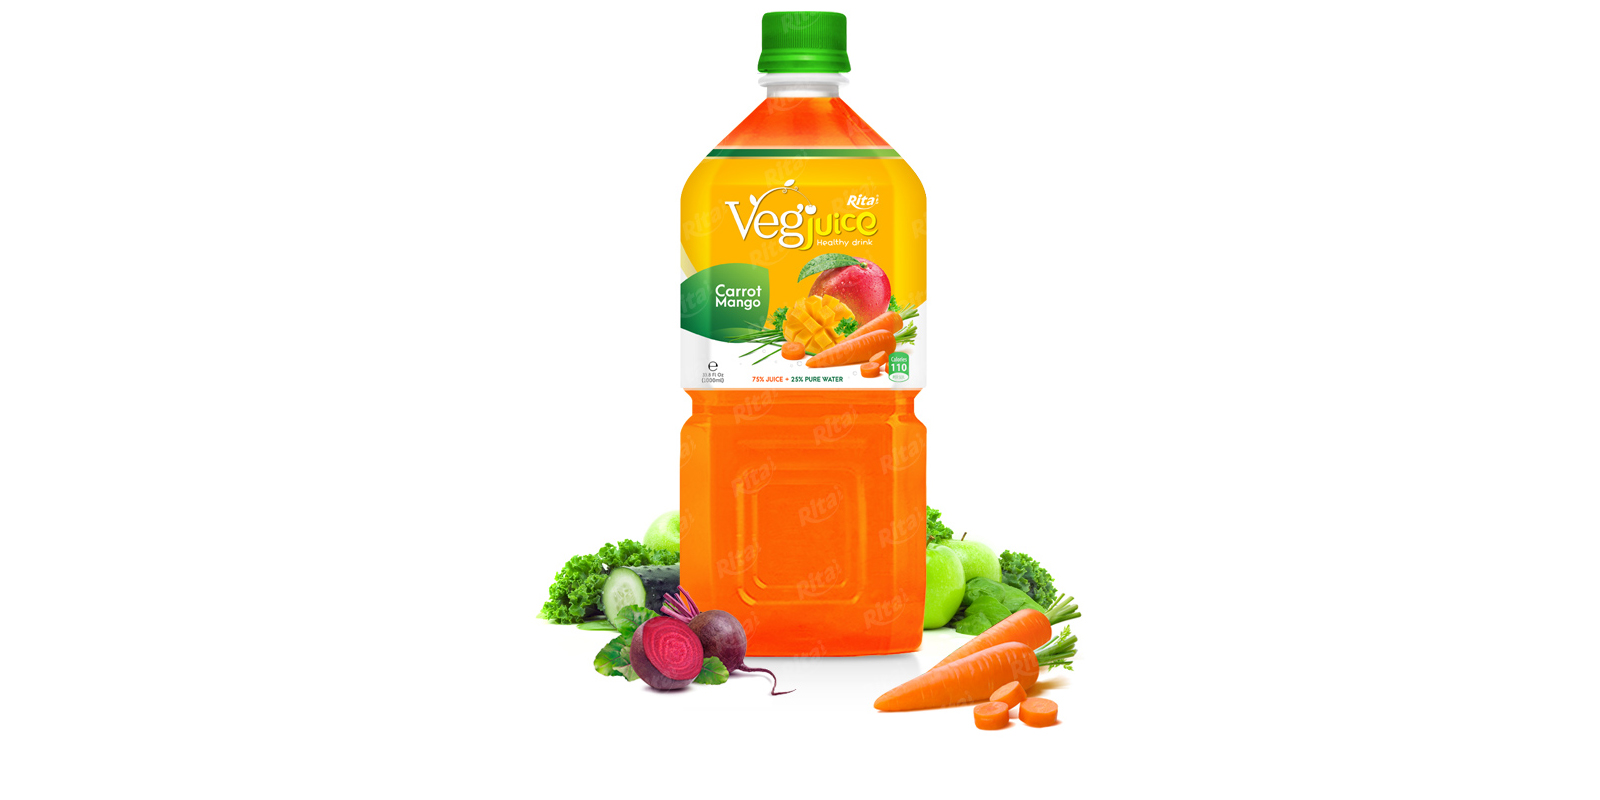 Rita vegetable carot mango 1000ml pet bottle